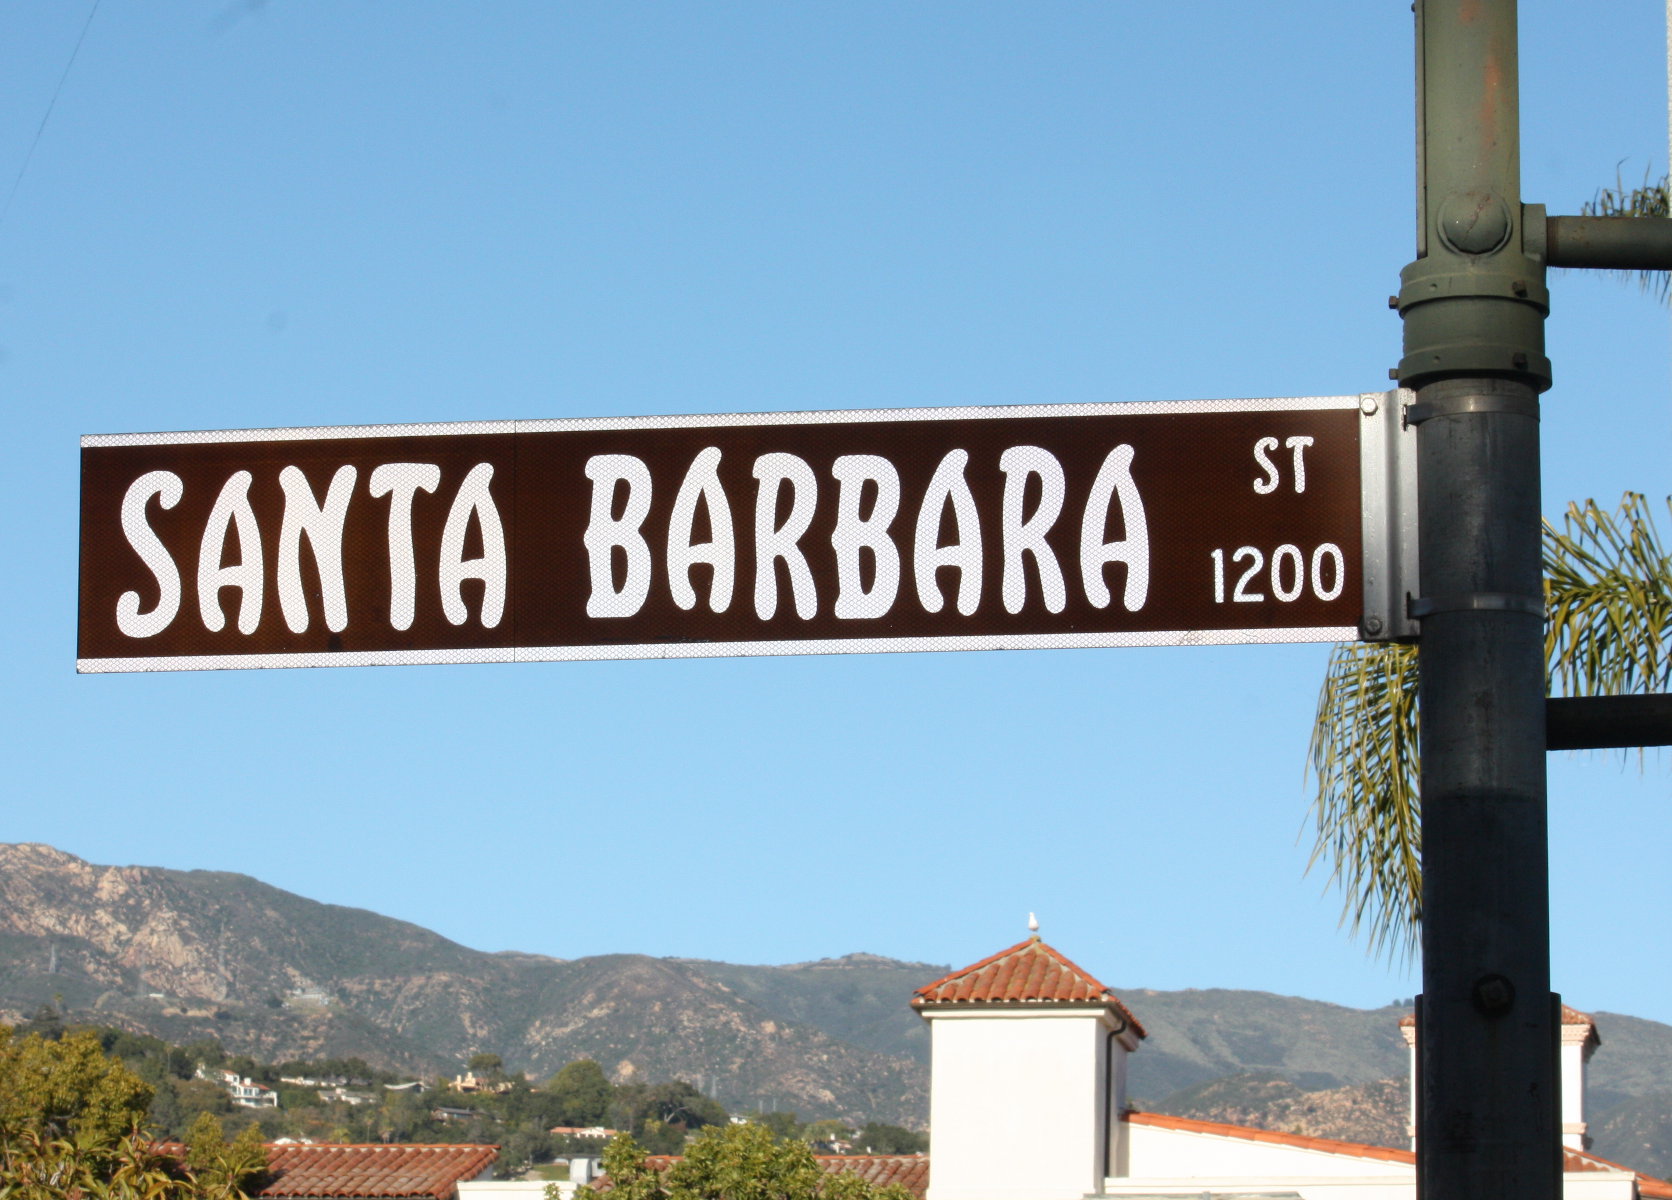 Santa Barbara Streets